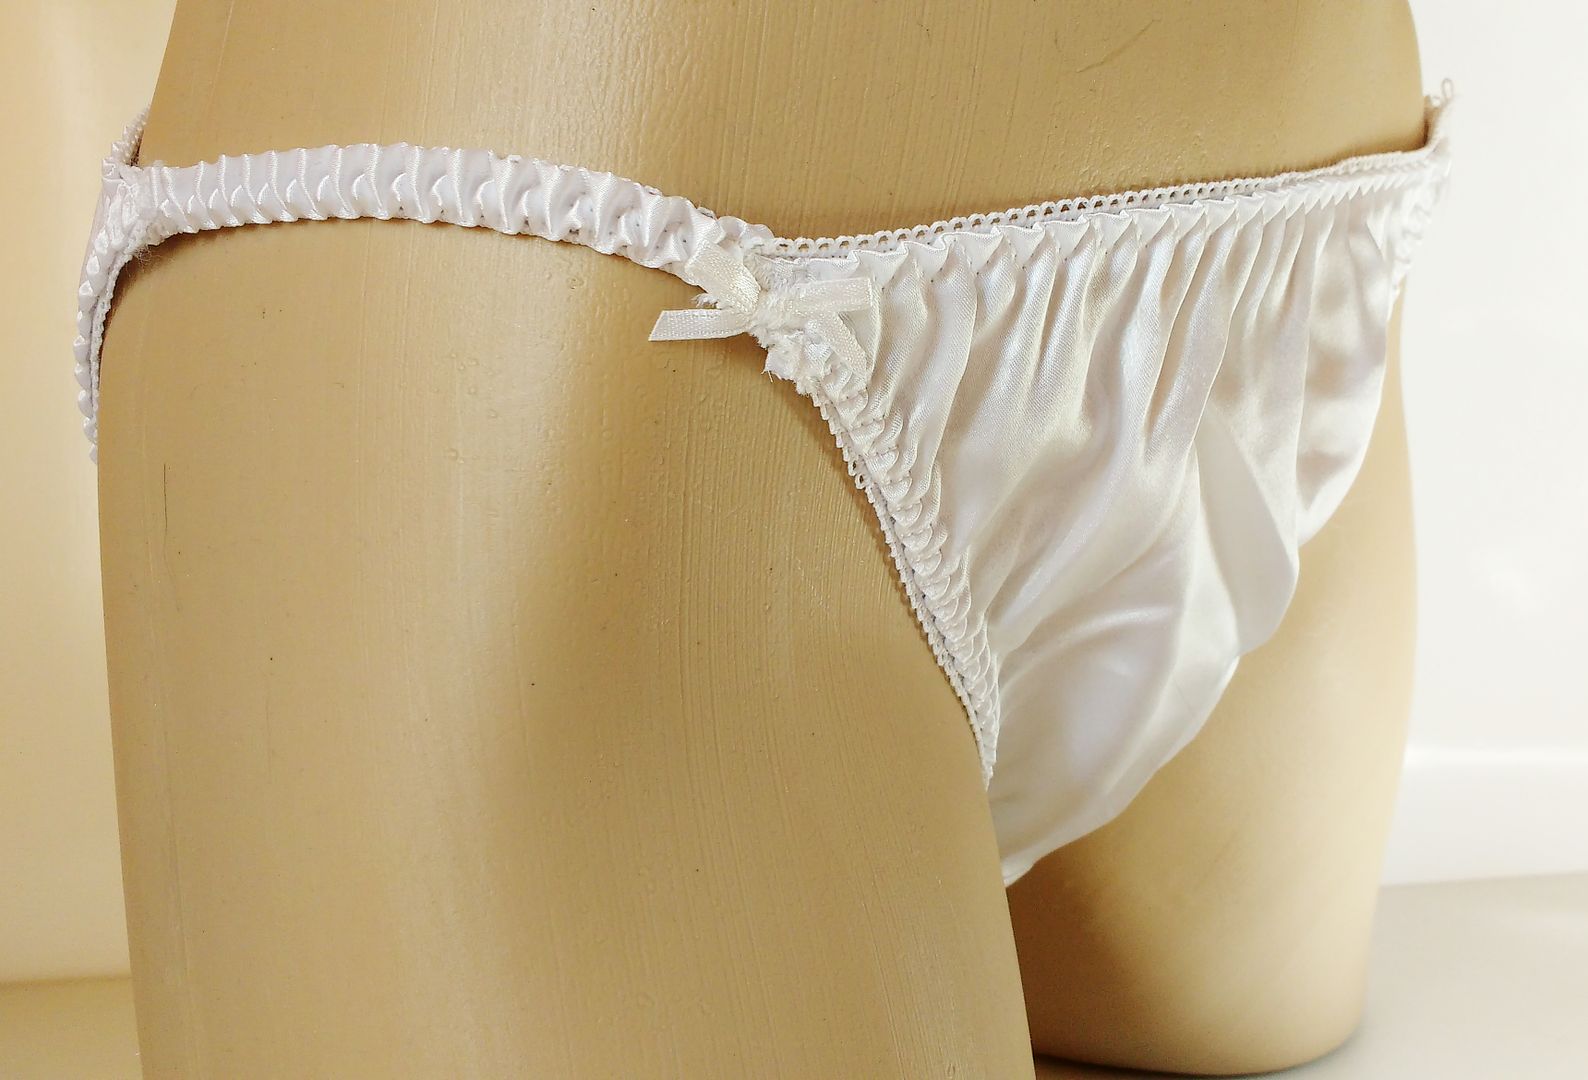 Silky Virgin White Satin String Bikini Panties Tanga Knickers Medium